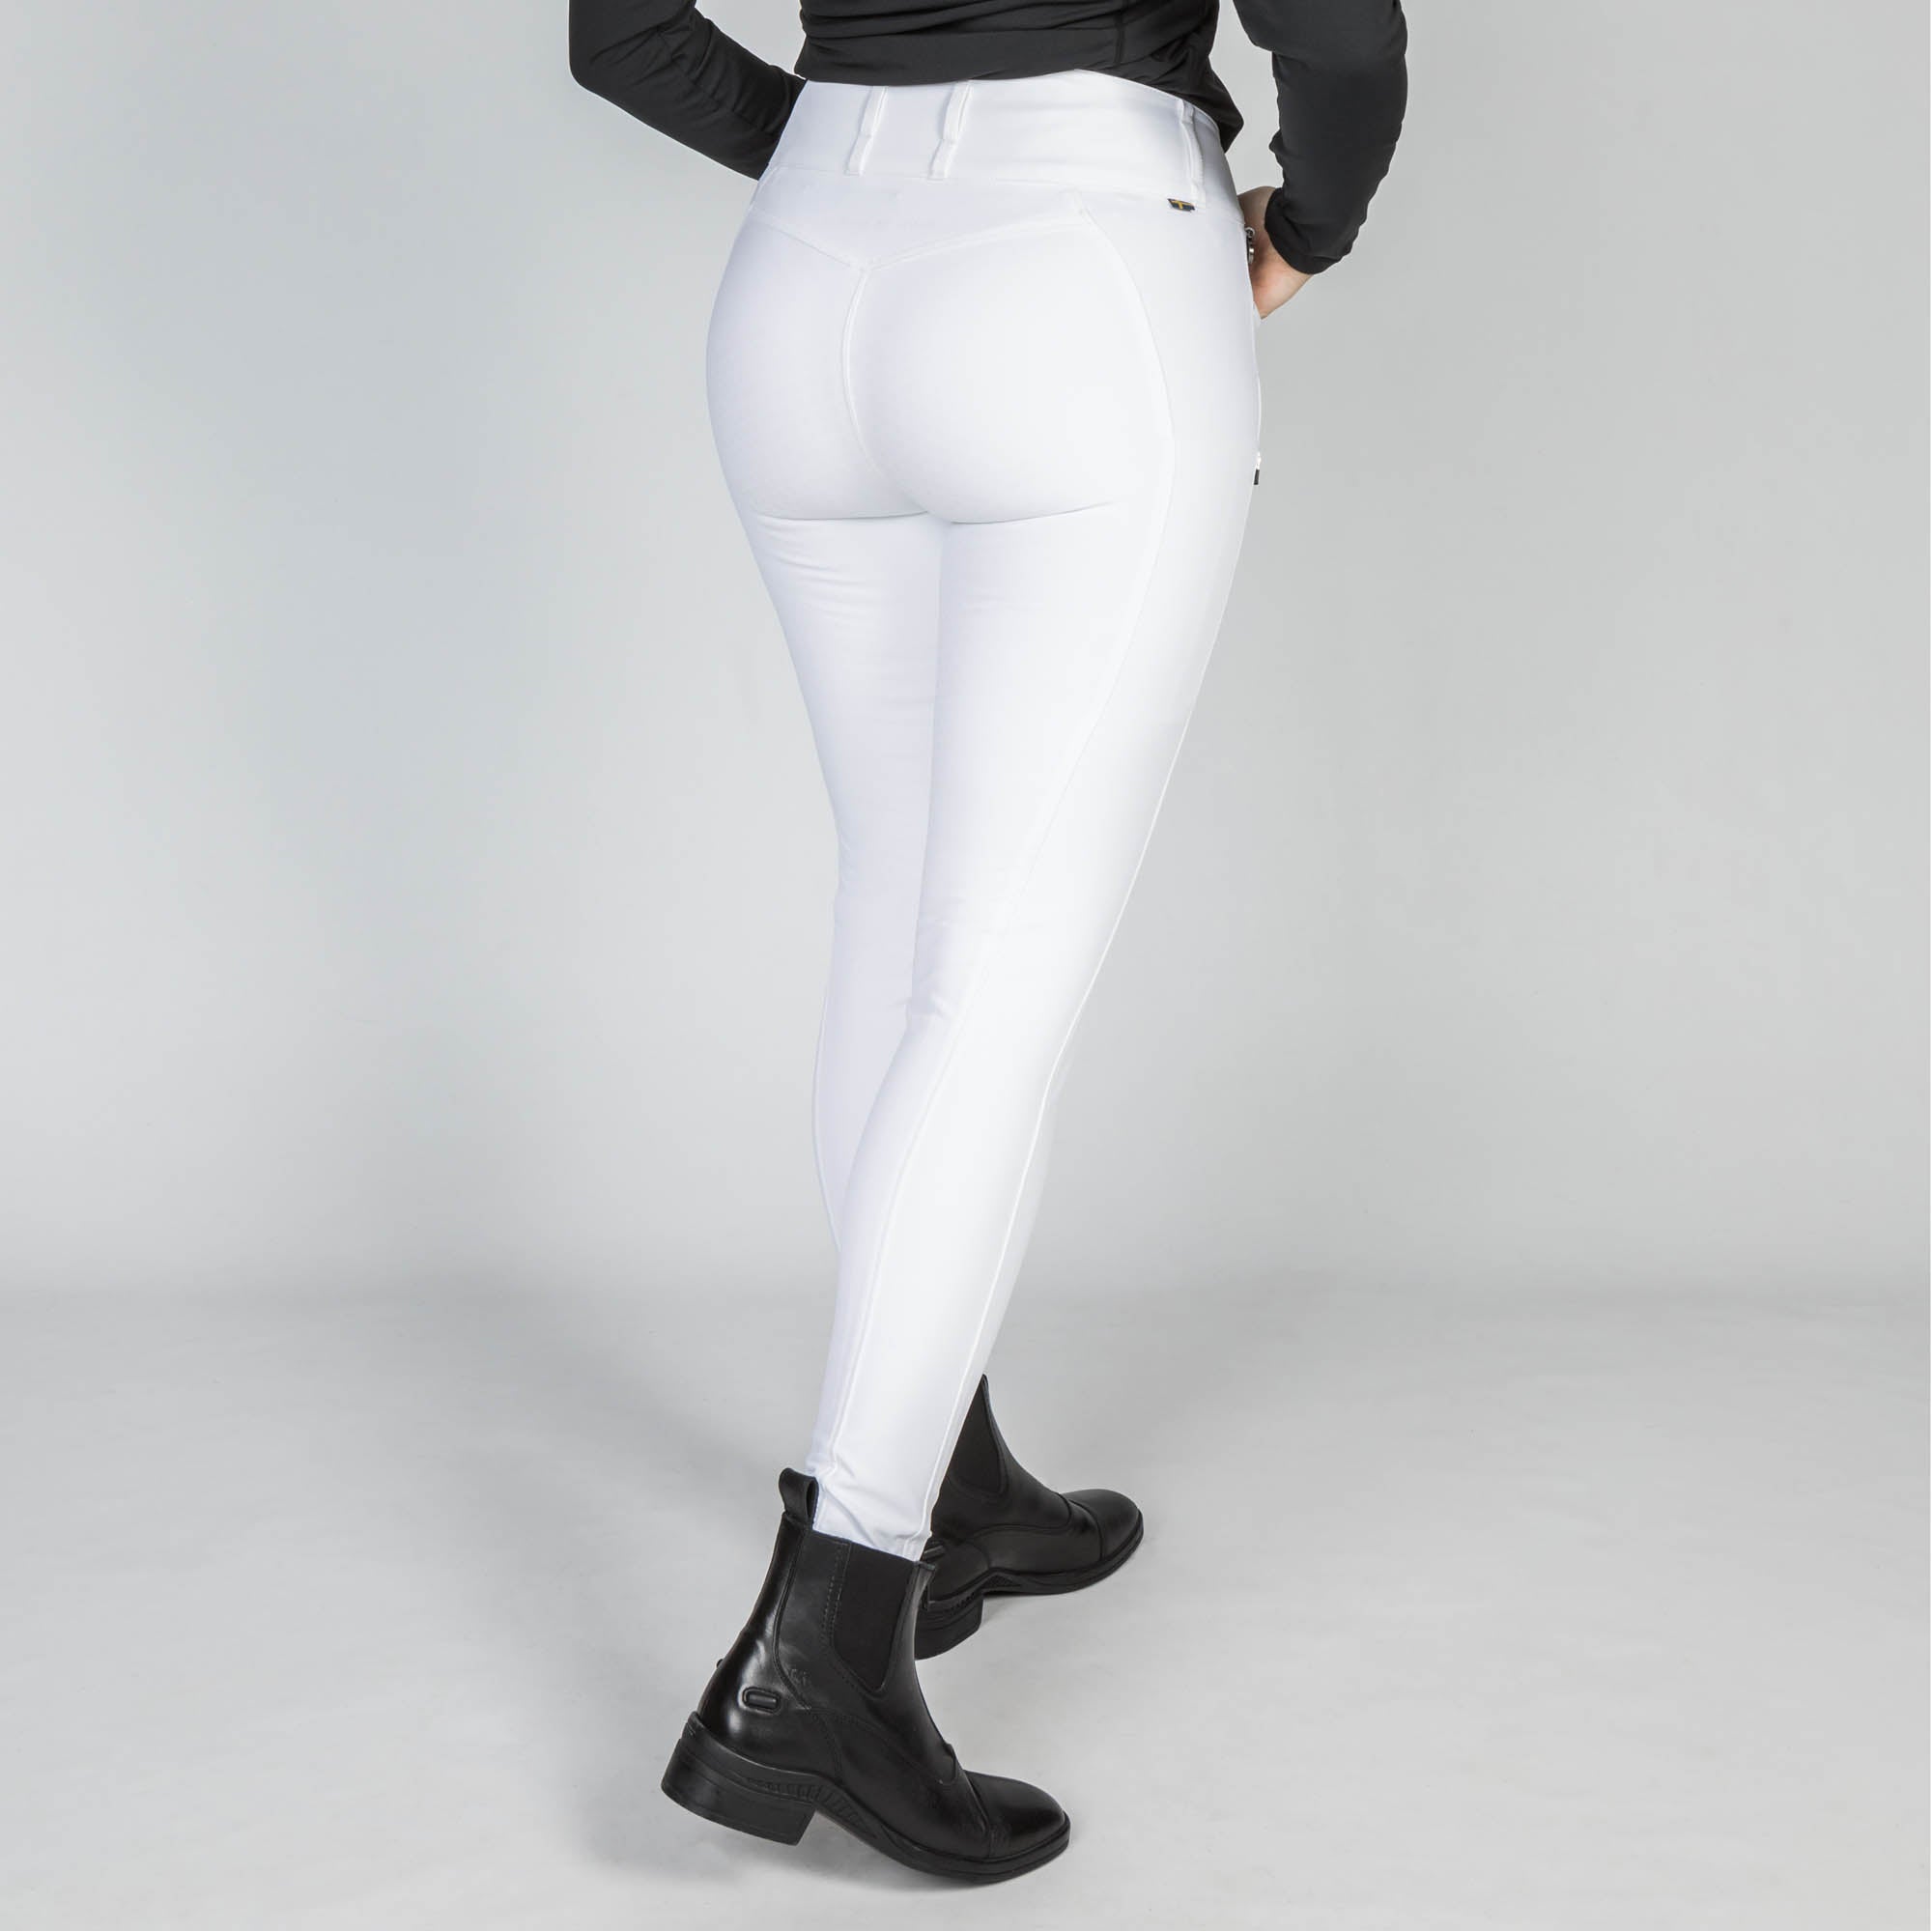 Pantalon d'équitation "Julia" W's FS - Blanc